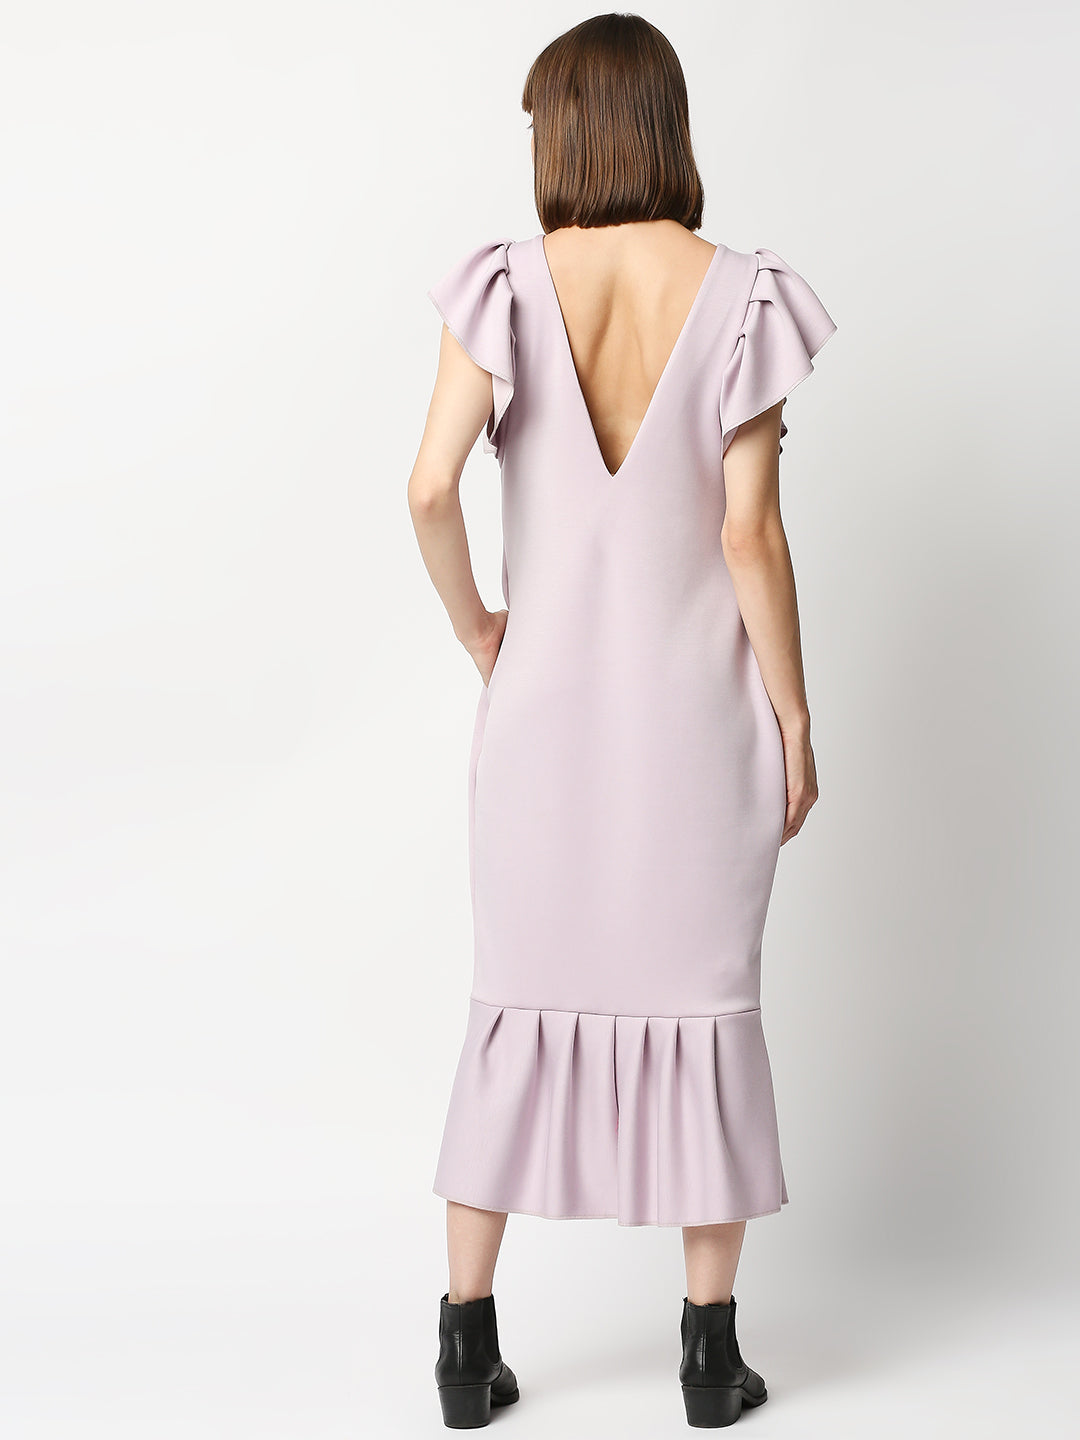 Buy Blamblack women's comfort dress lavender